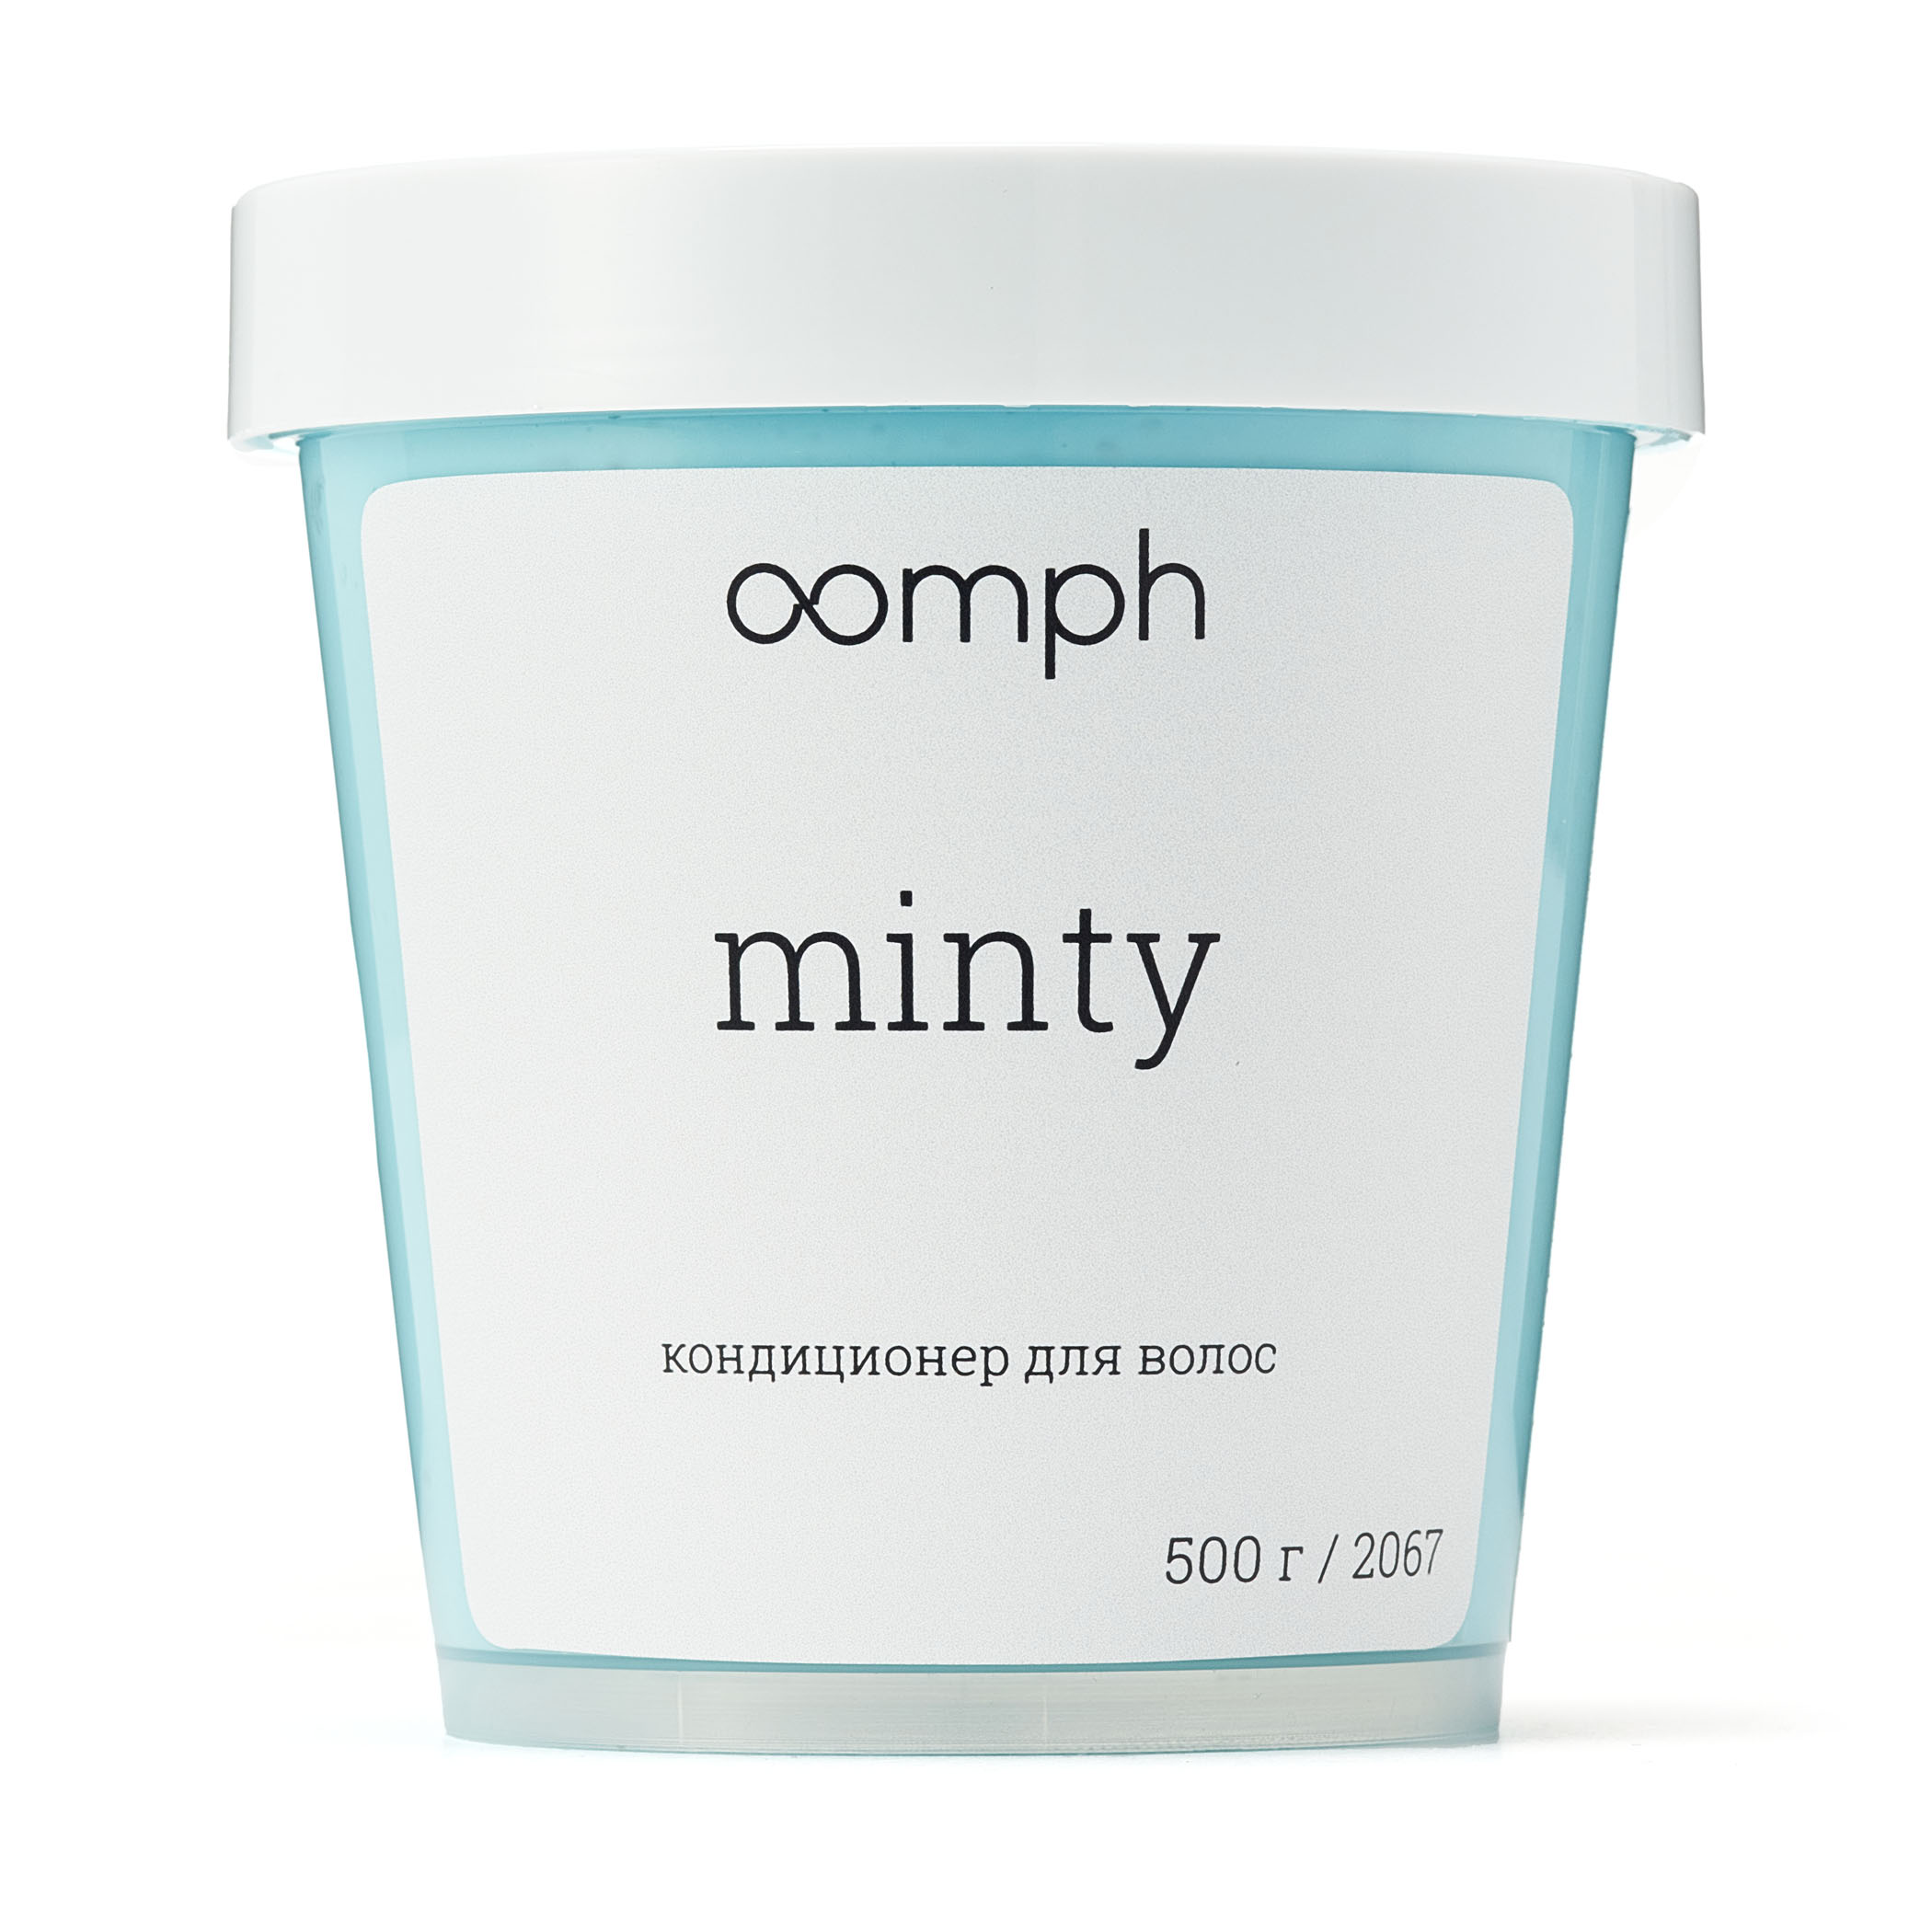 Кондиционер для волос Oomph Minty 500г